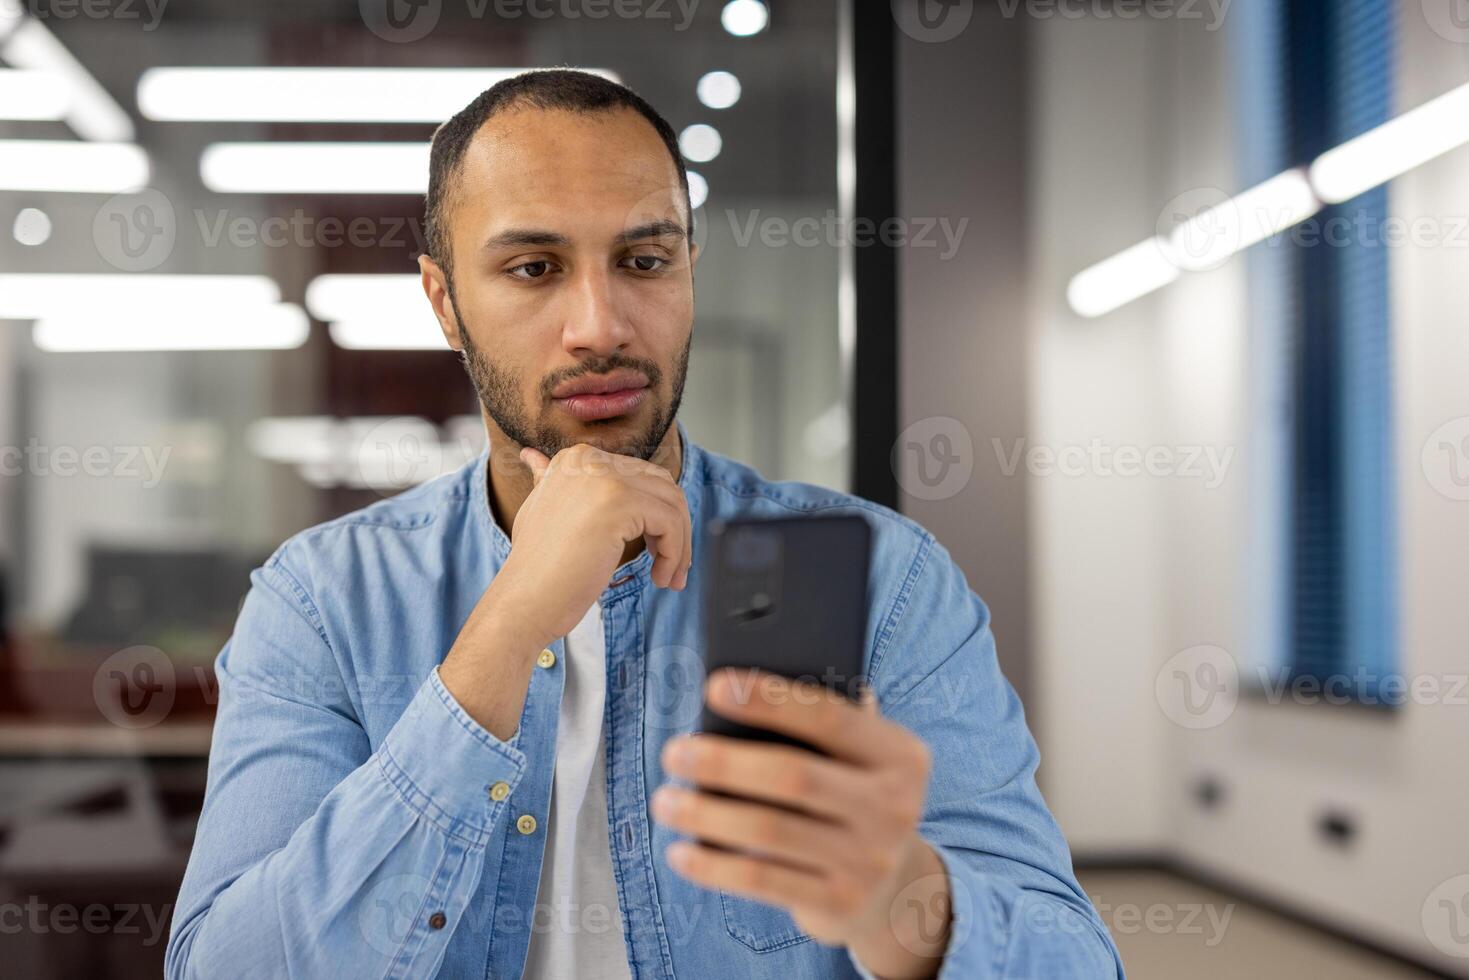 en vardagligt klädd man engagerar med hans smartphone, bläddring eller kommunicera, medan stående i en samtida kontor miljö med en självsäker hållning. foto